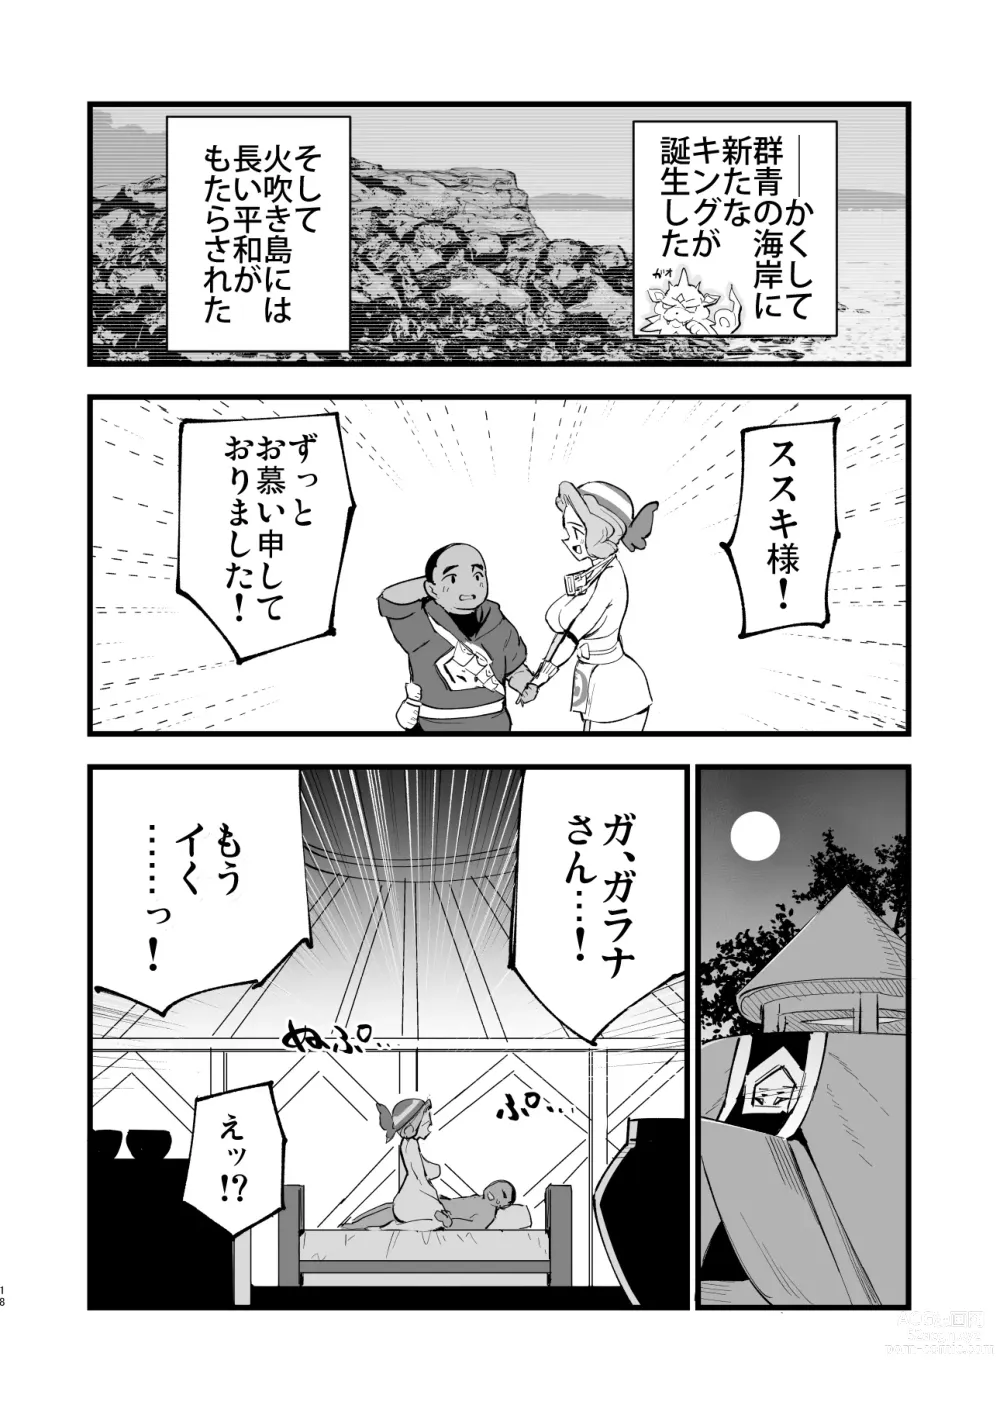 Page 18 of doujinshi Hisui Tensei-roku 3